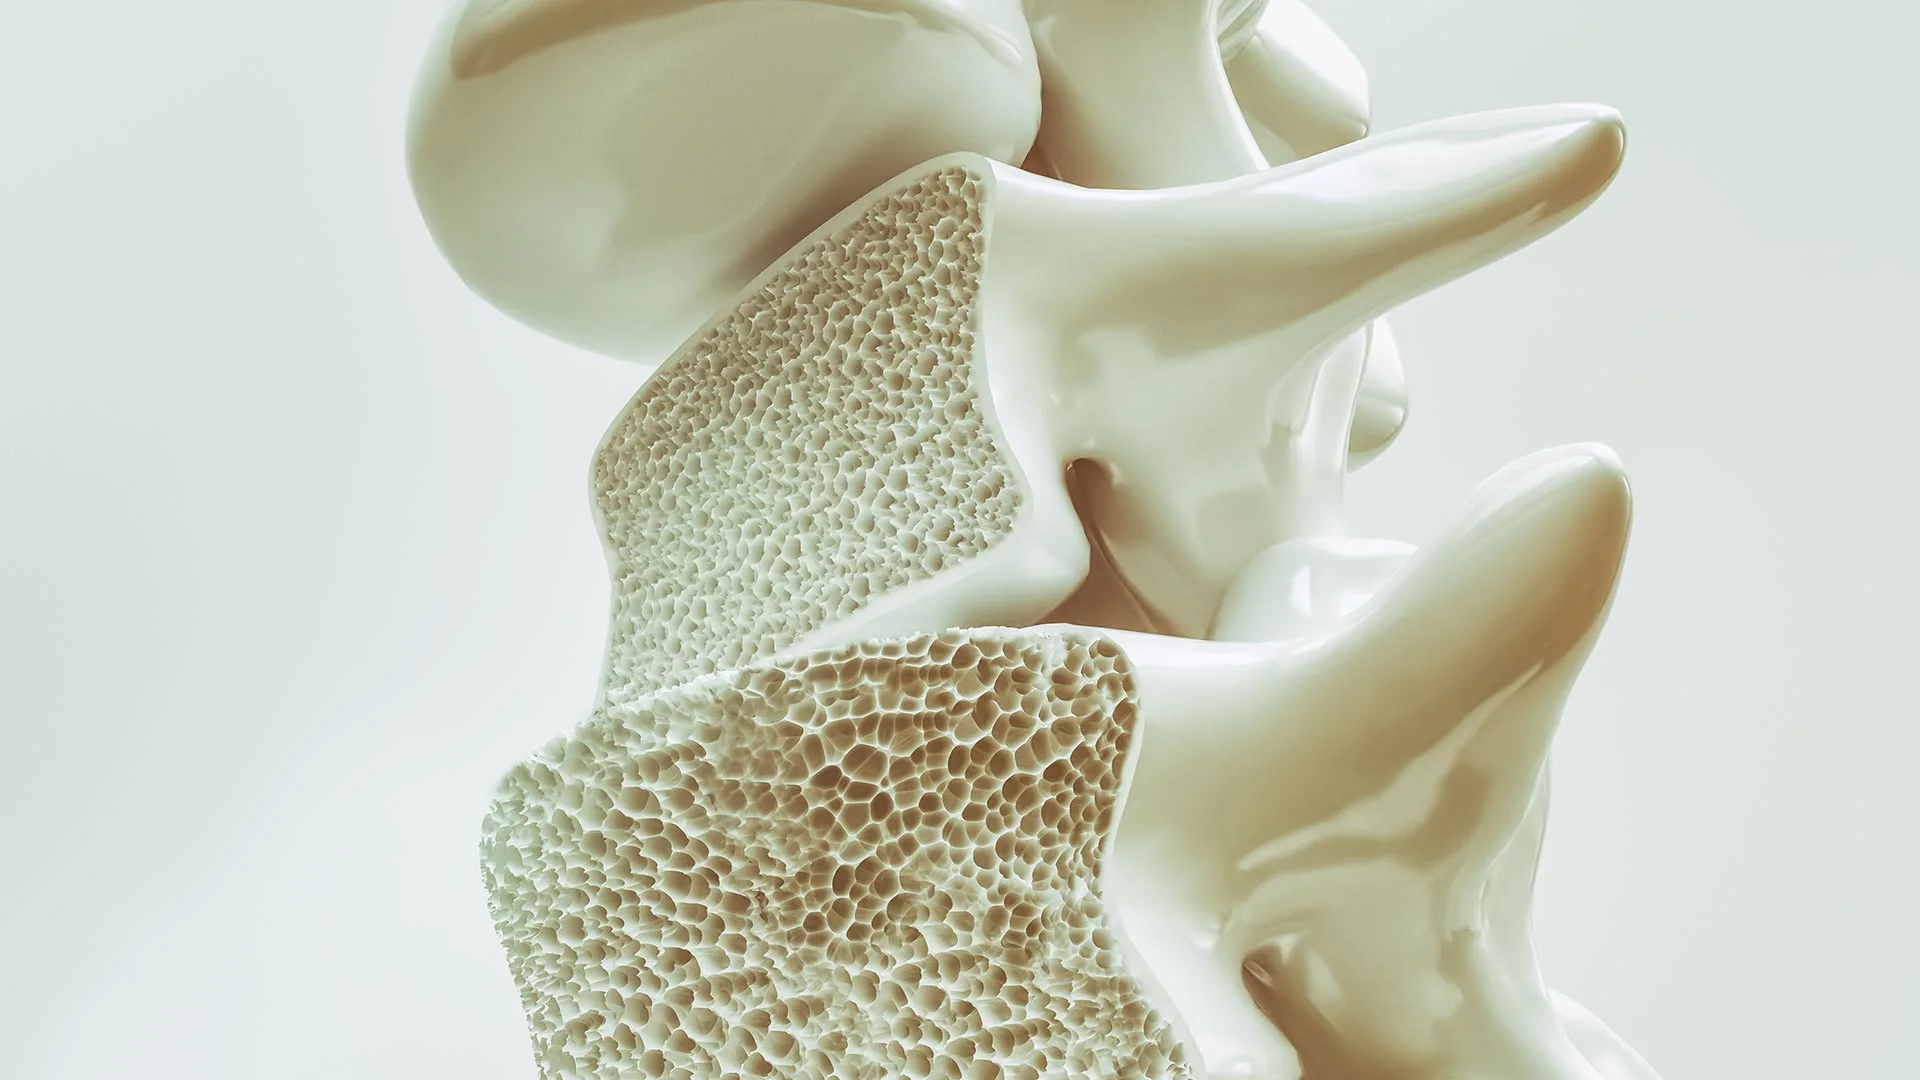 Experten Netzwerk Osteoporose Bild Knochenstruktur Wirbelsäule